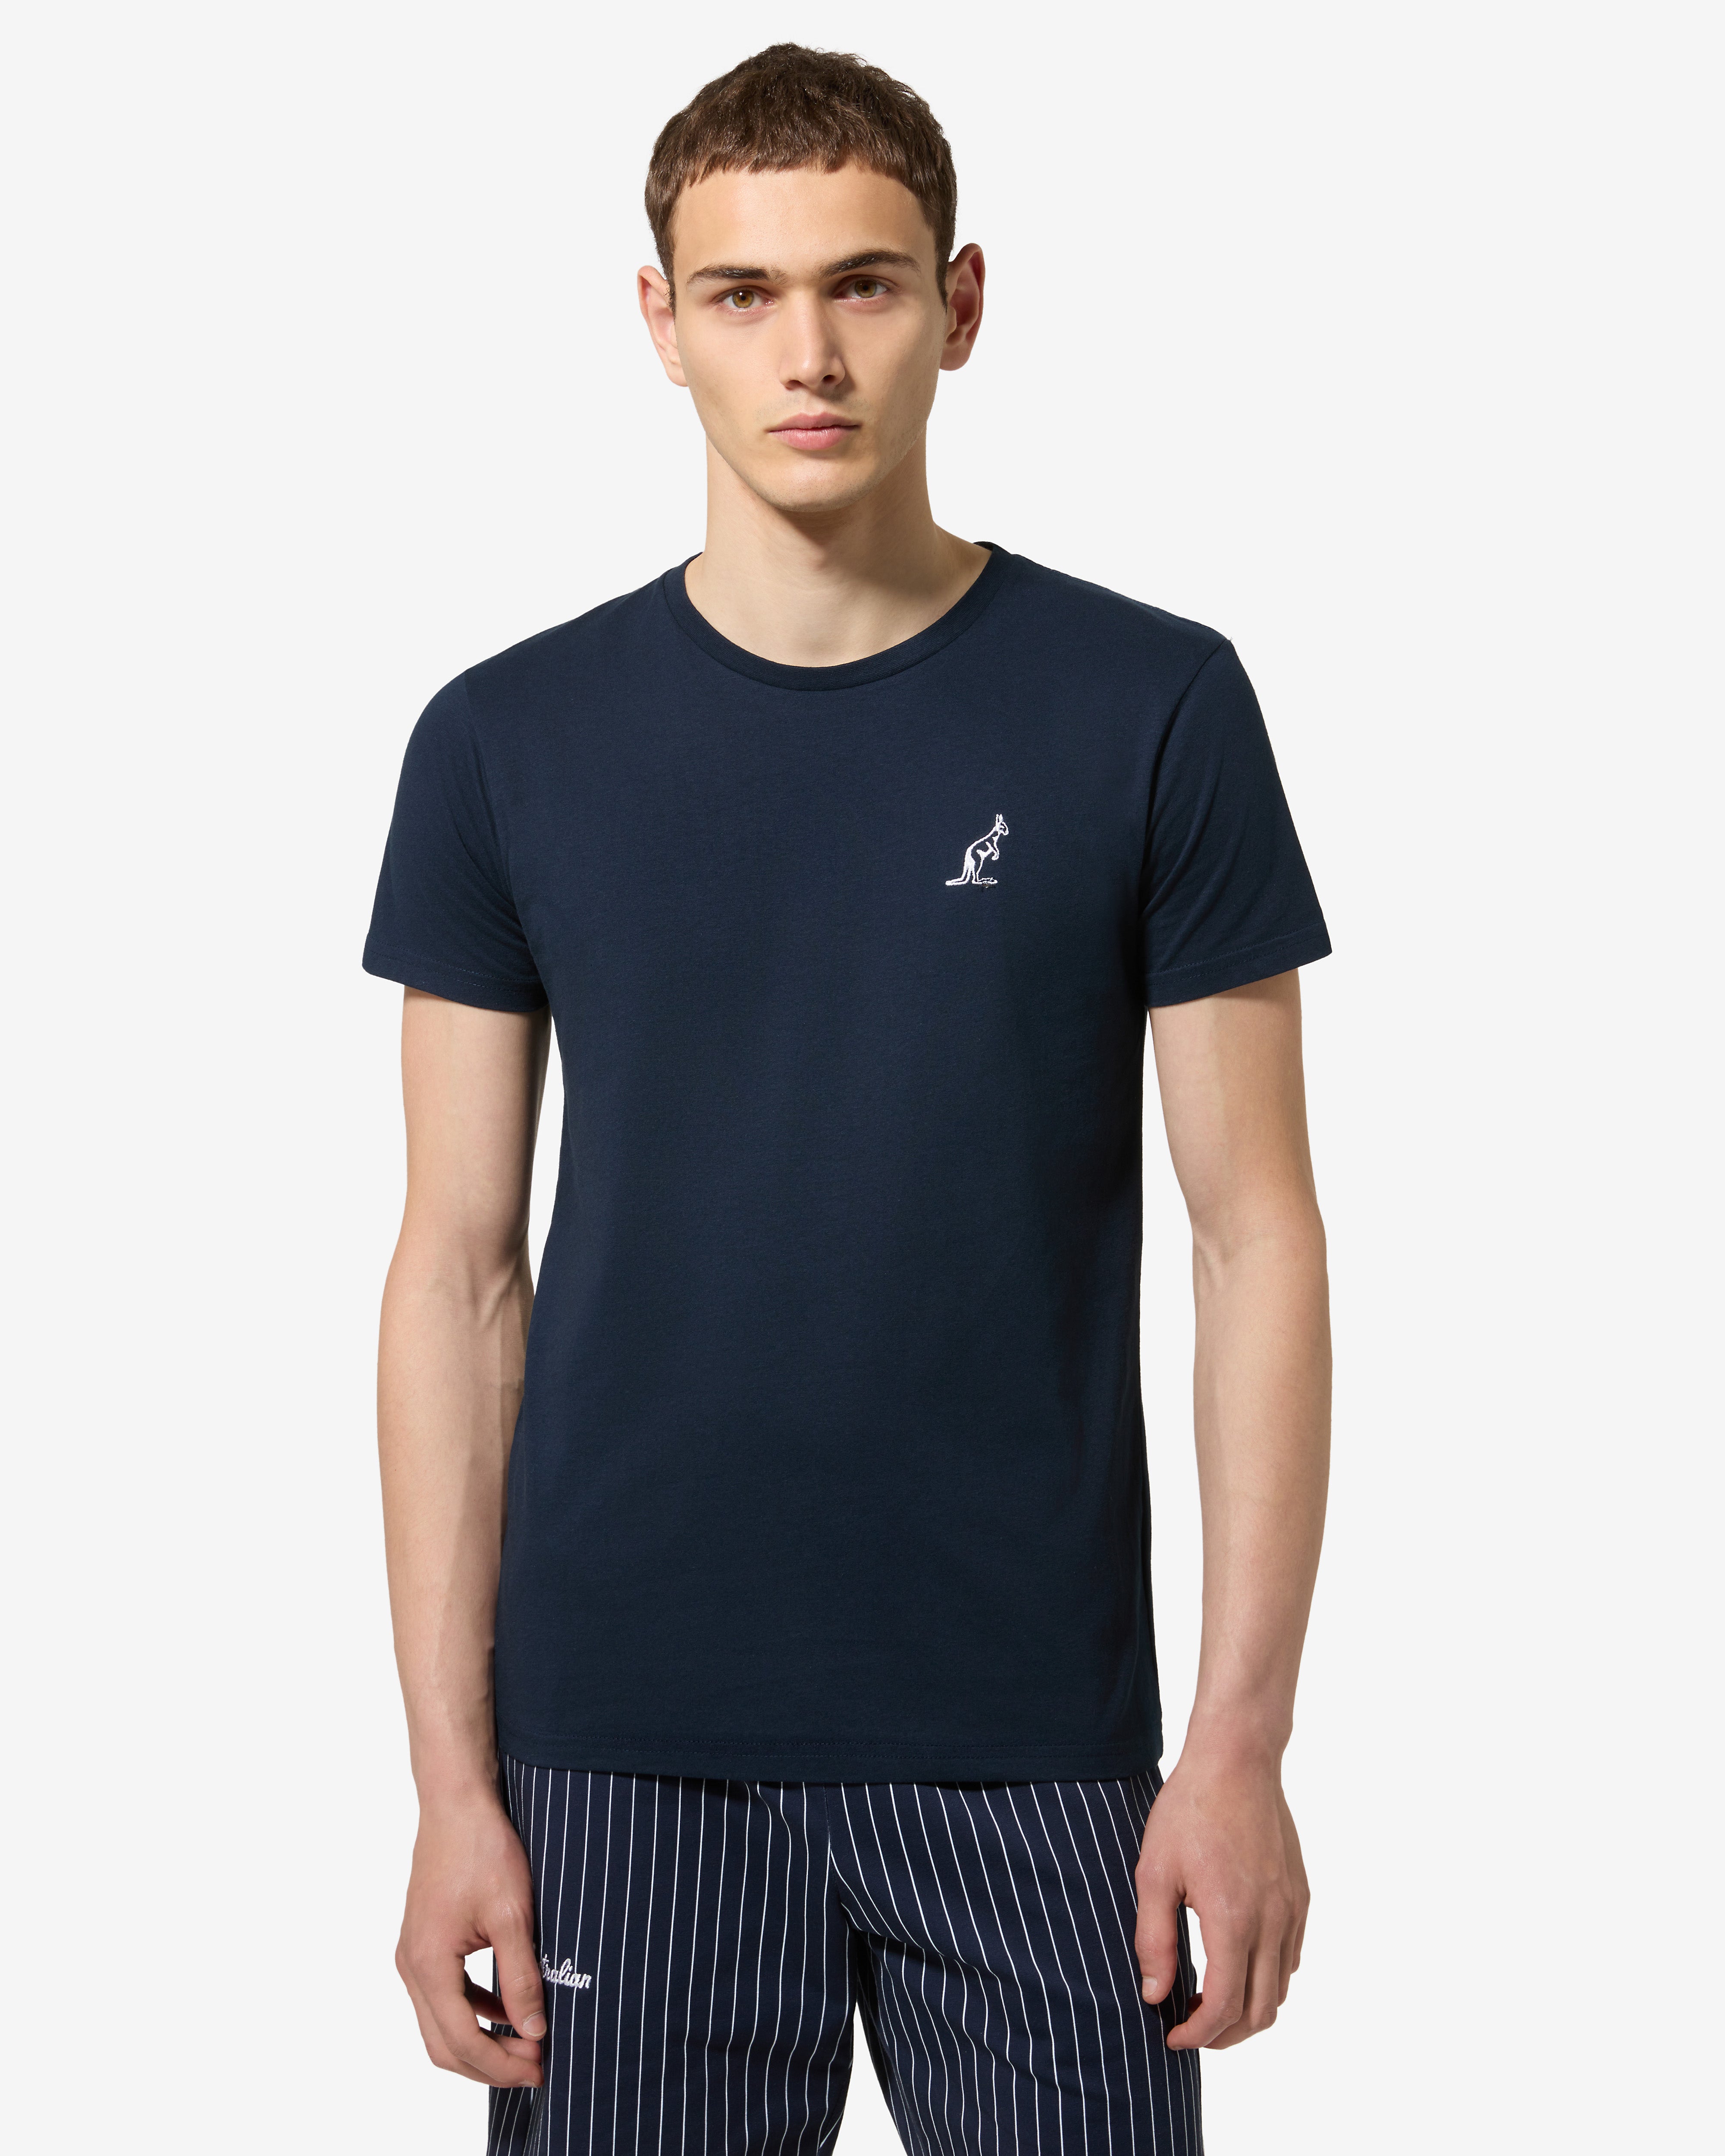 Basic T-shirt: Australian Sportswear